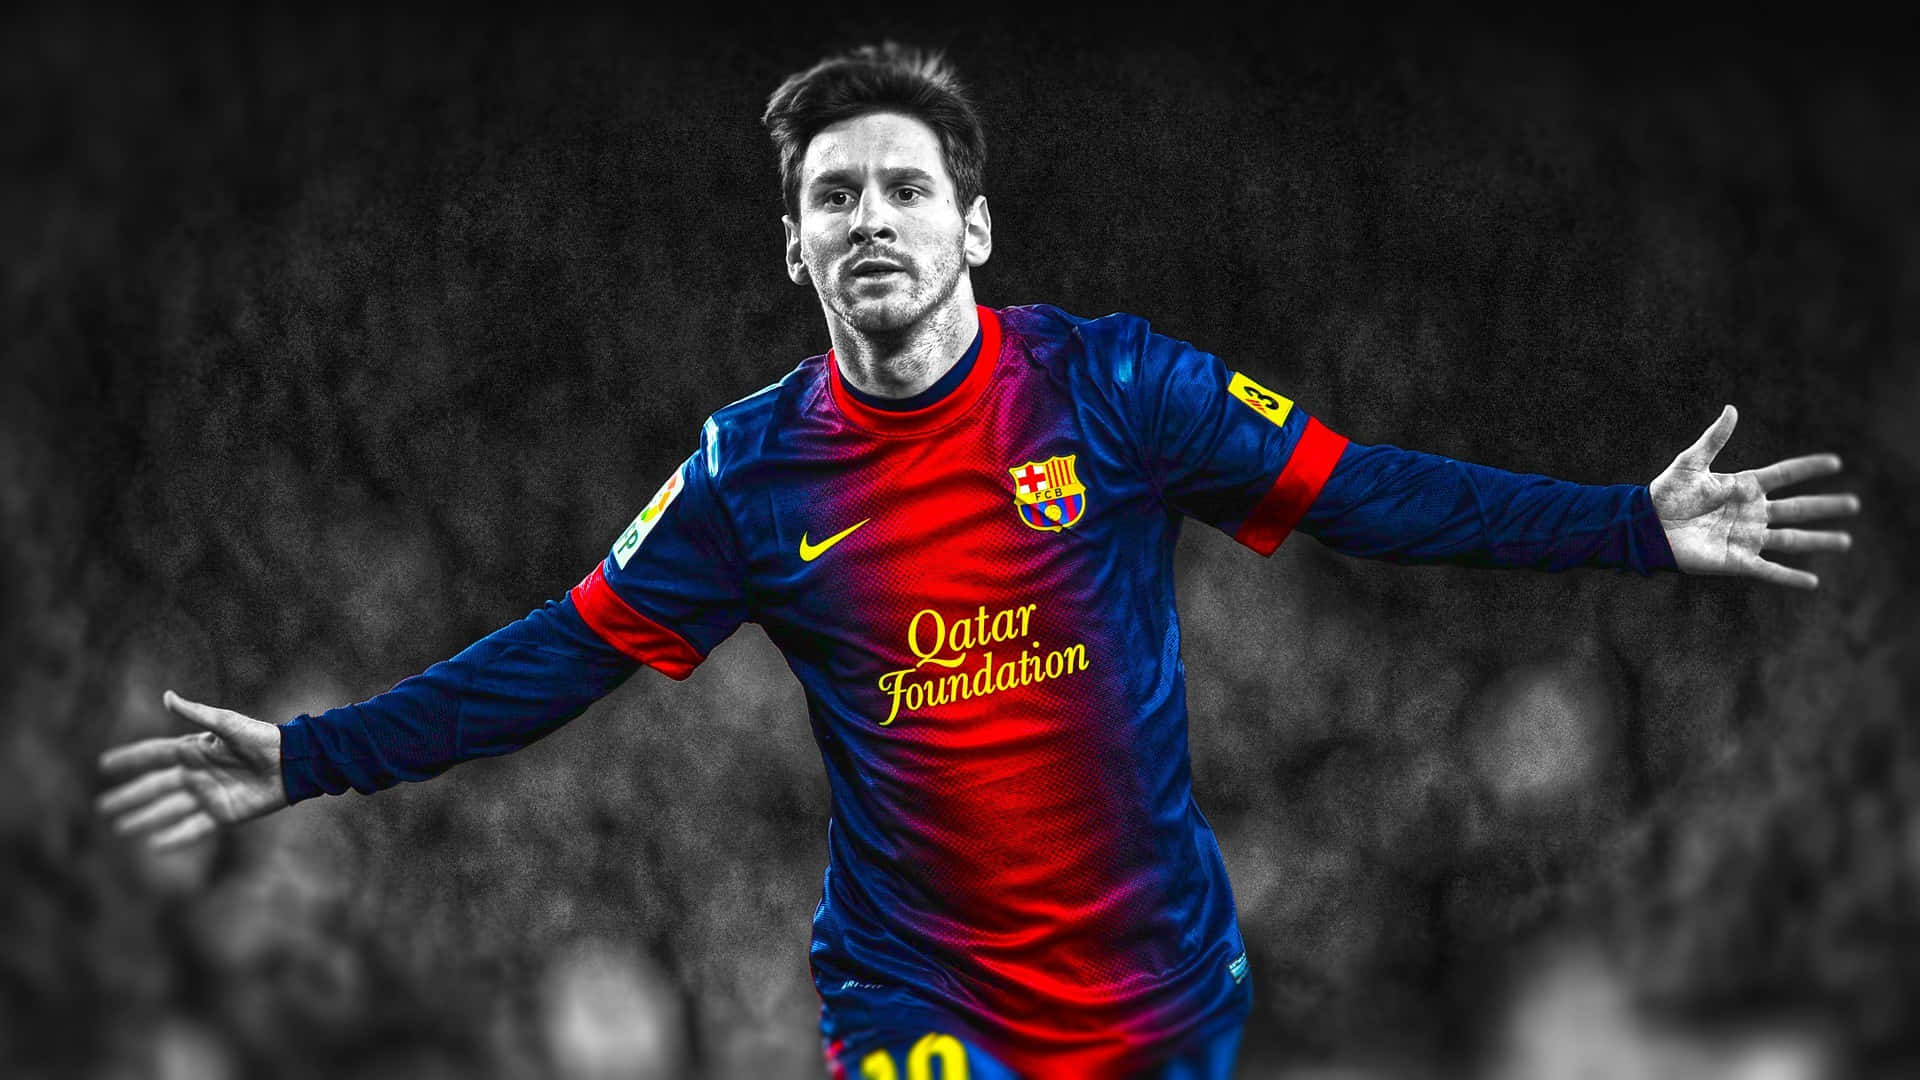 Bilddes Fußballers Lionel Messi